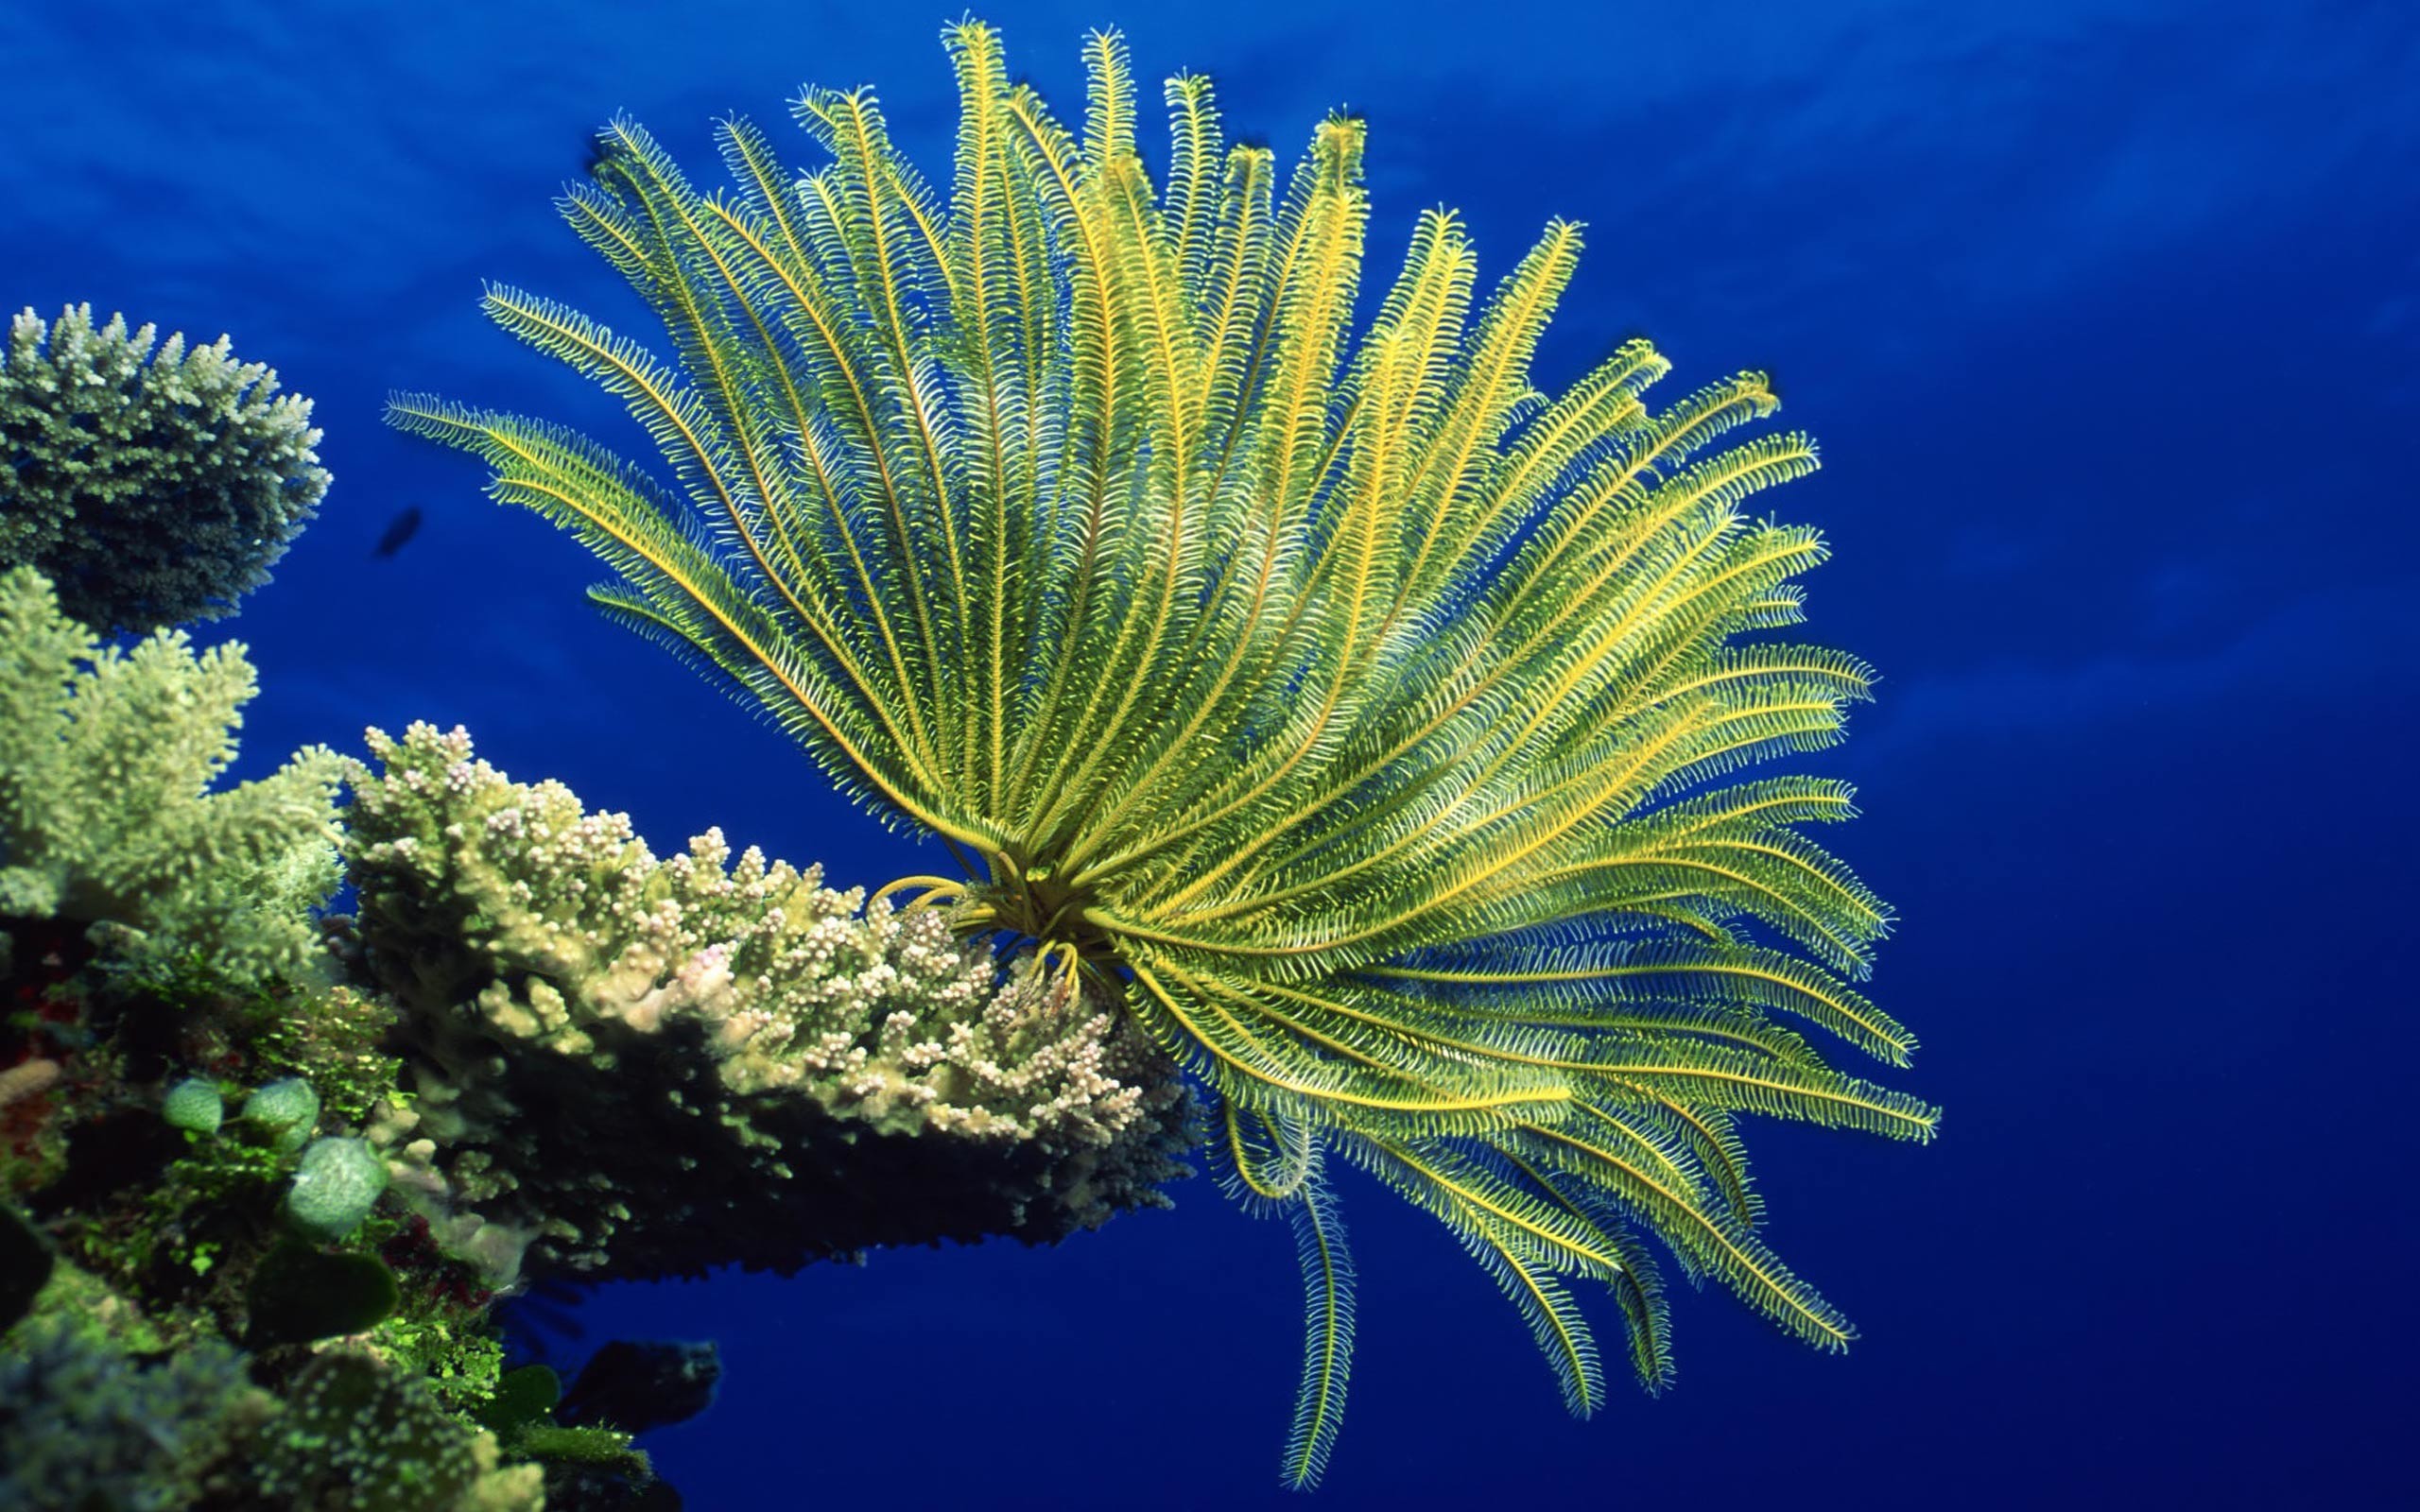 2560x1600 Desktop Wallpaper Â· Gallery Â· Animals Â· Sea anemones - Coral reef .